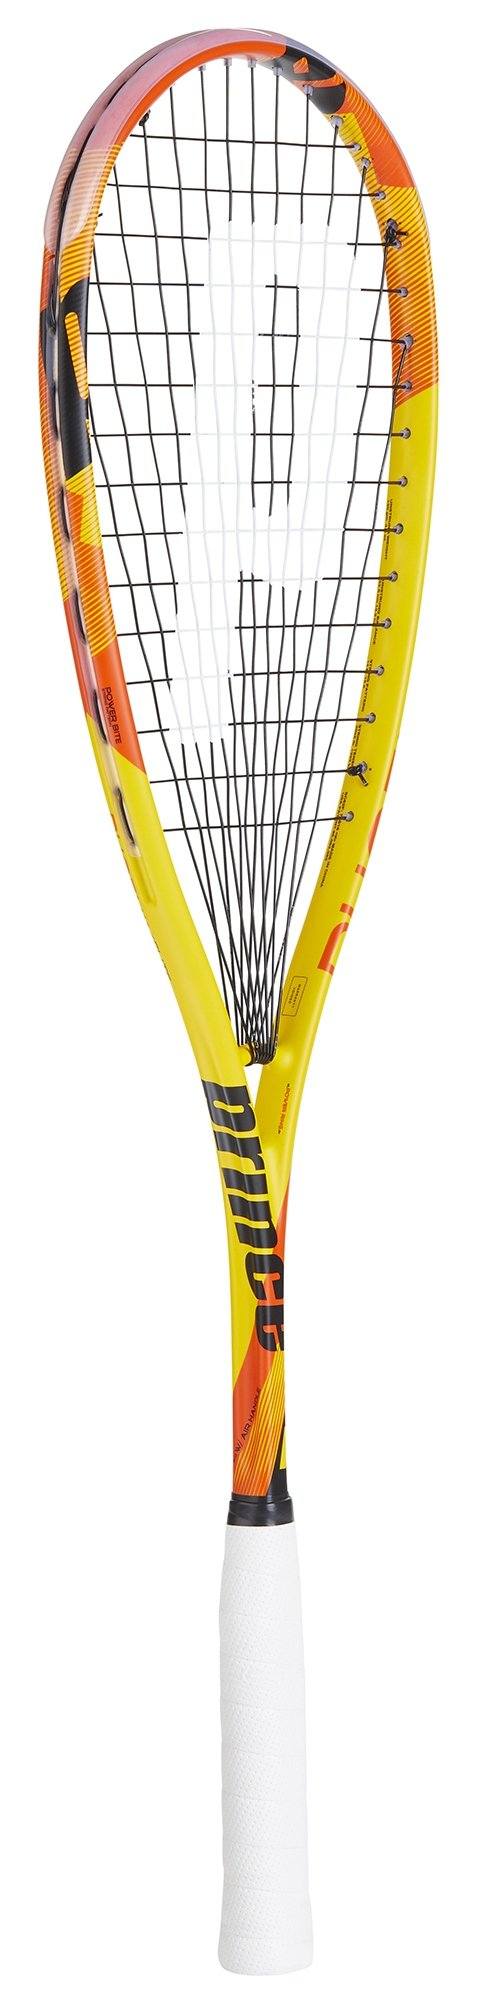 Prince Phoenix Elite 700 Squash racquet Squash Racquets Prince 